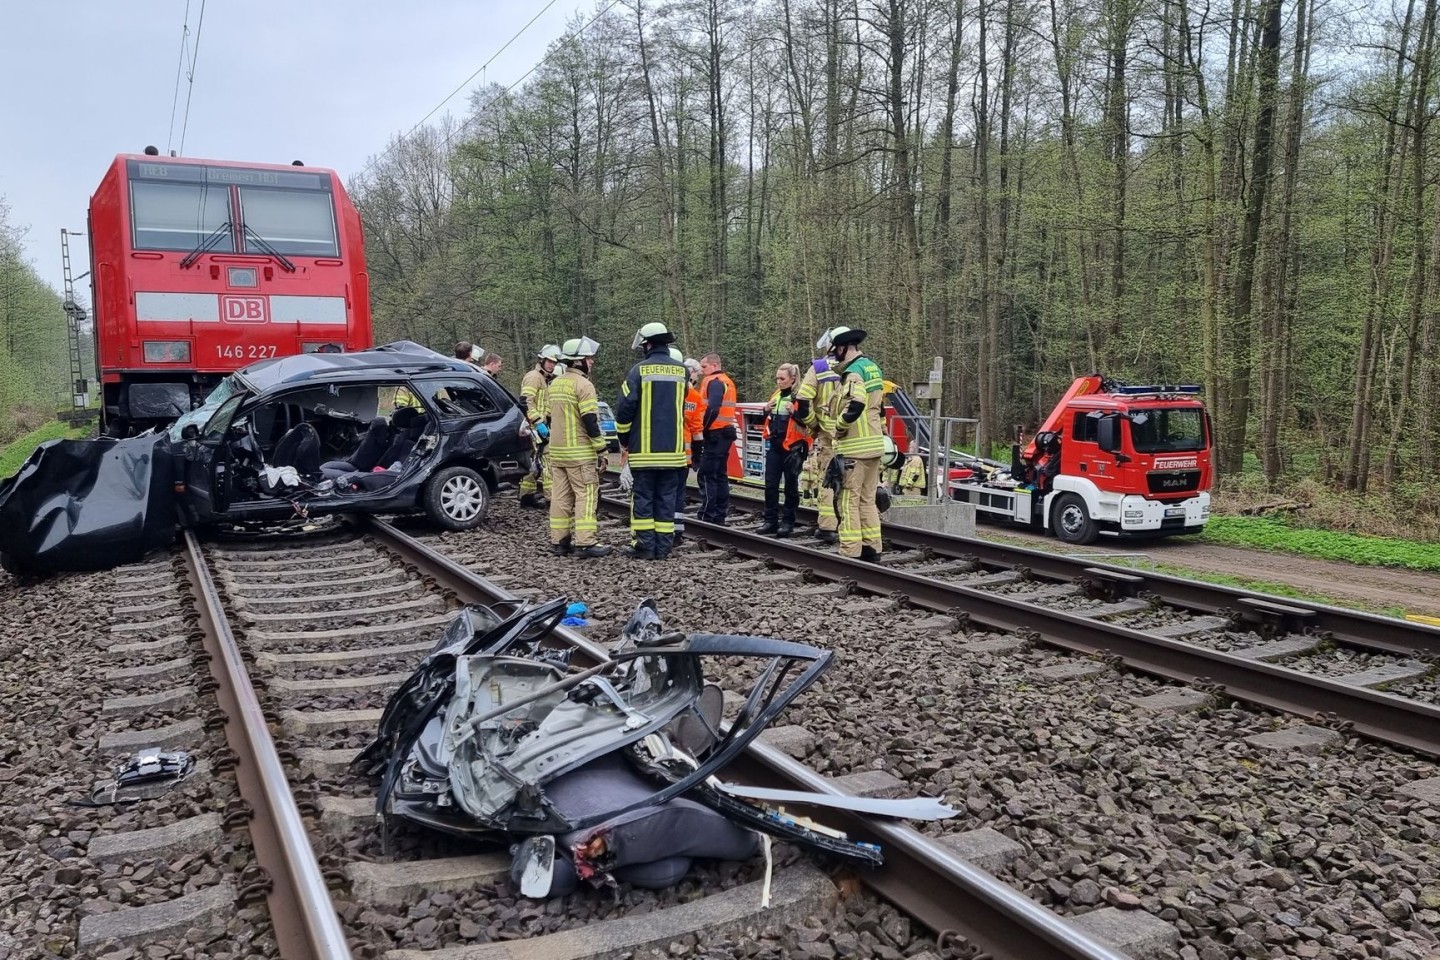 Beim Zusammenstoß eines Zuges mit einem Auto an einem Bahnübergang nahe Hannover sind drei junge Menschen ums Leben gekommen.